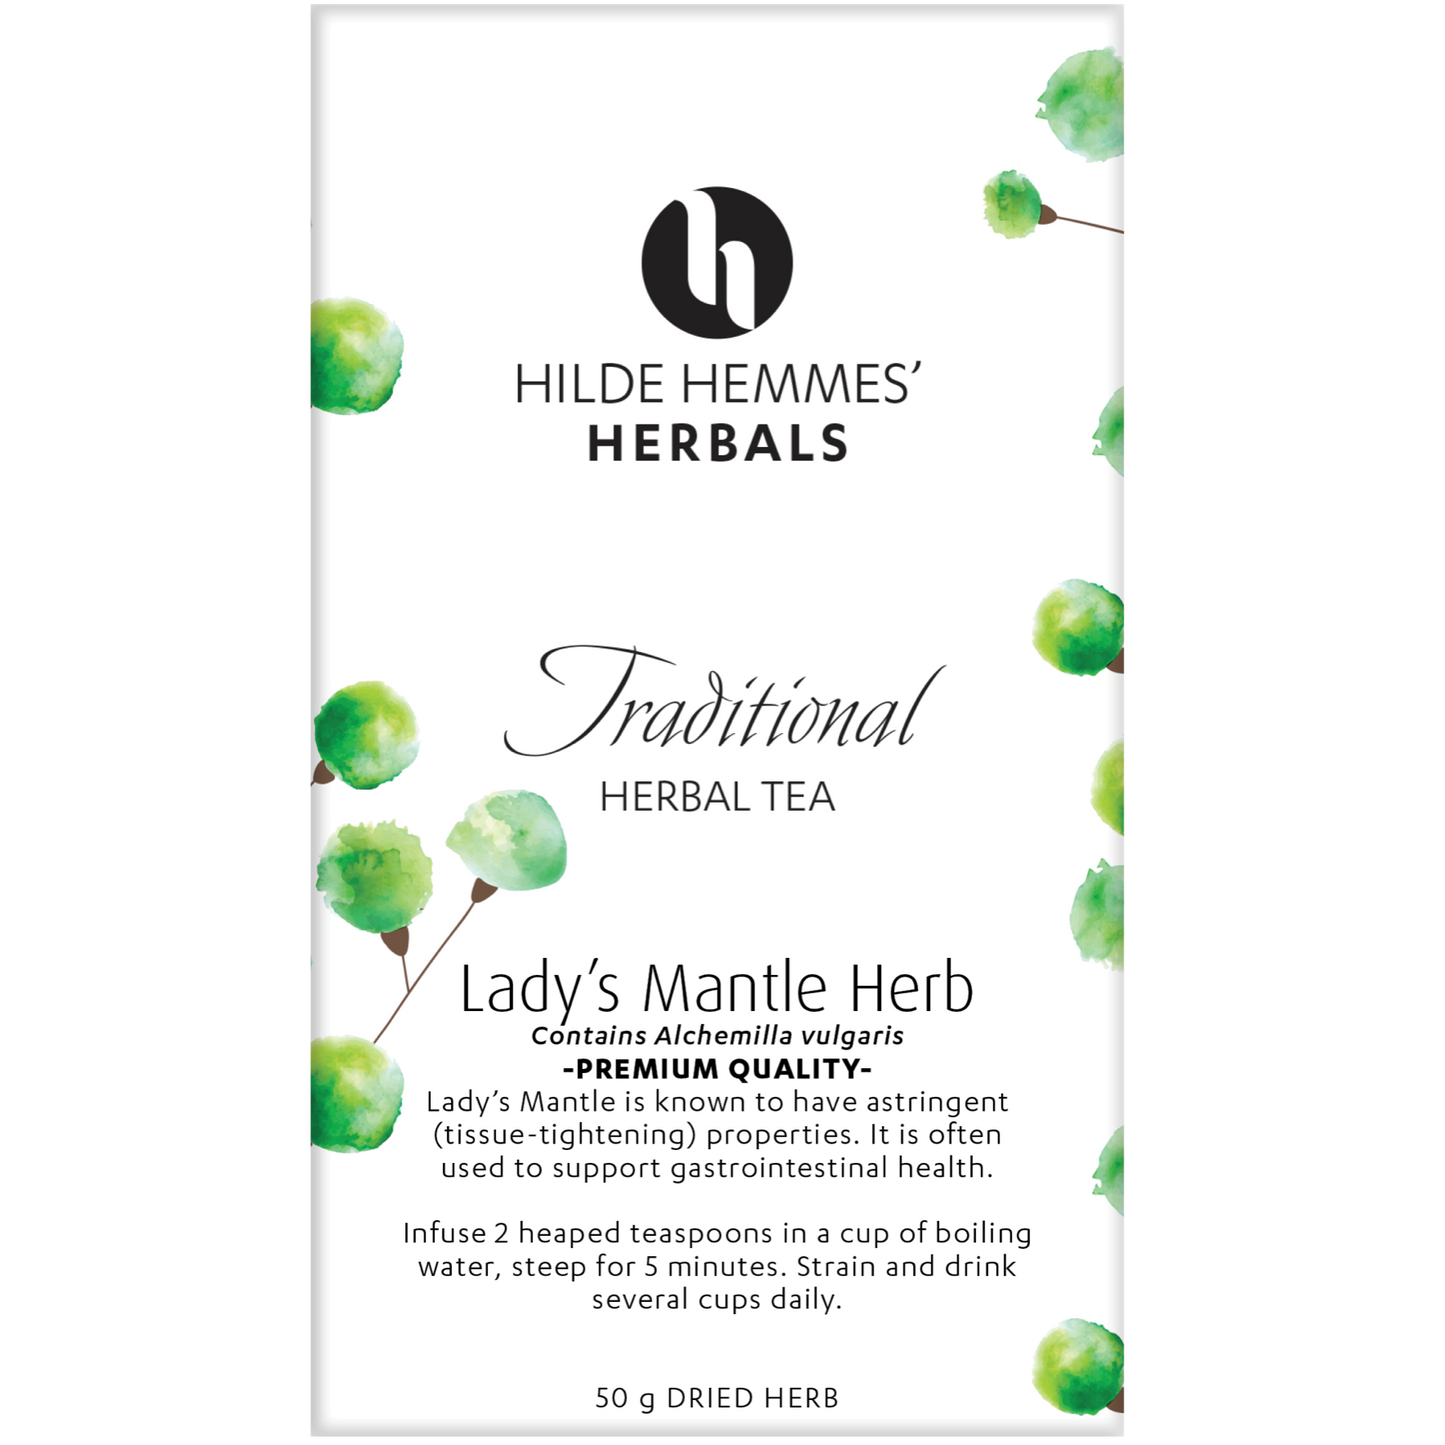 Hilde Hemmes Herbal's Tea 50g, Lady's Mantle (Loose Leaf)